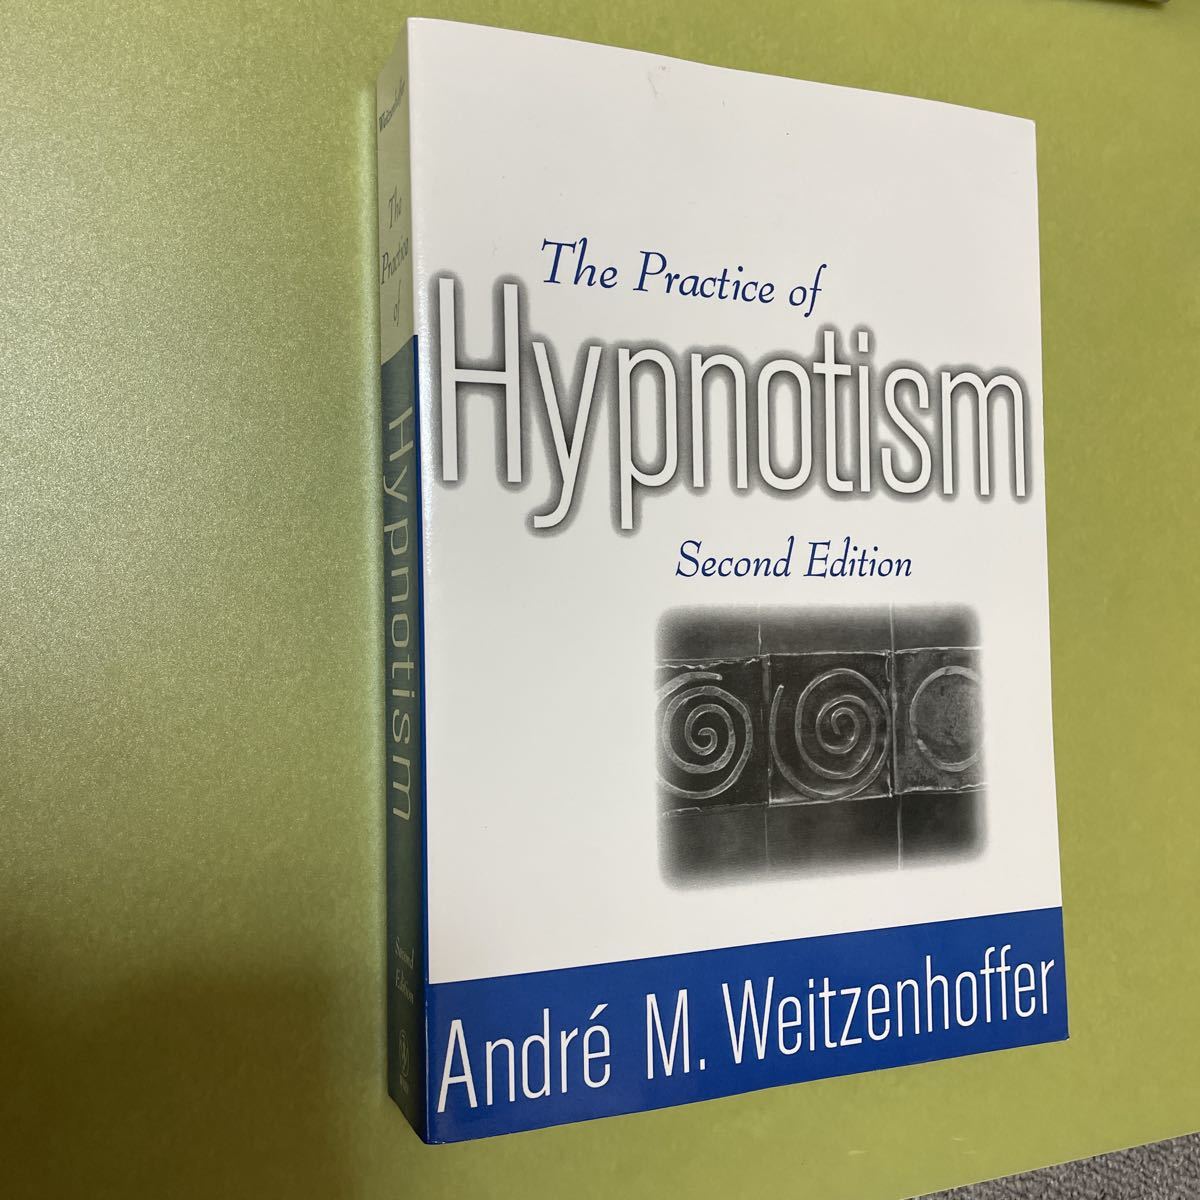 数量は多】 ◎催眠術の英語本 The Practice of Hypnotism 英語版 人生